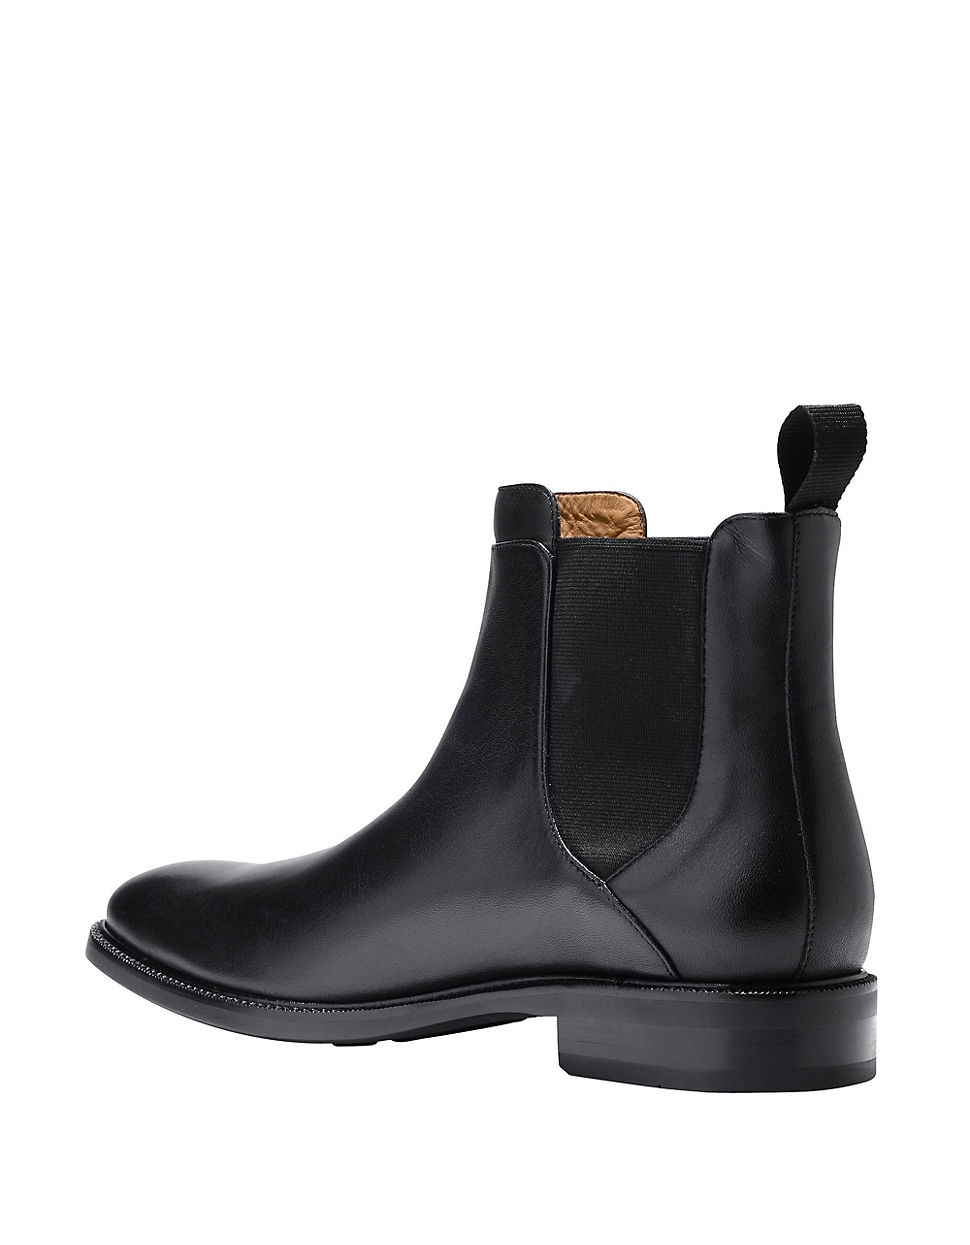 Cole haan Warren Waterproof Leather Chelsea Boots for Men | Lyst